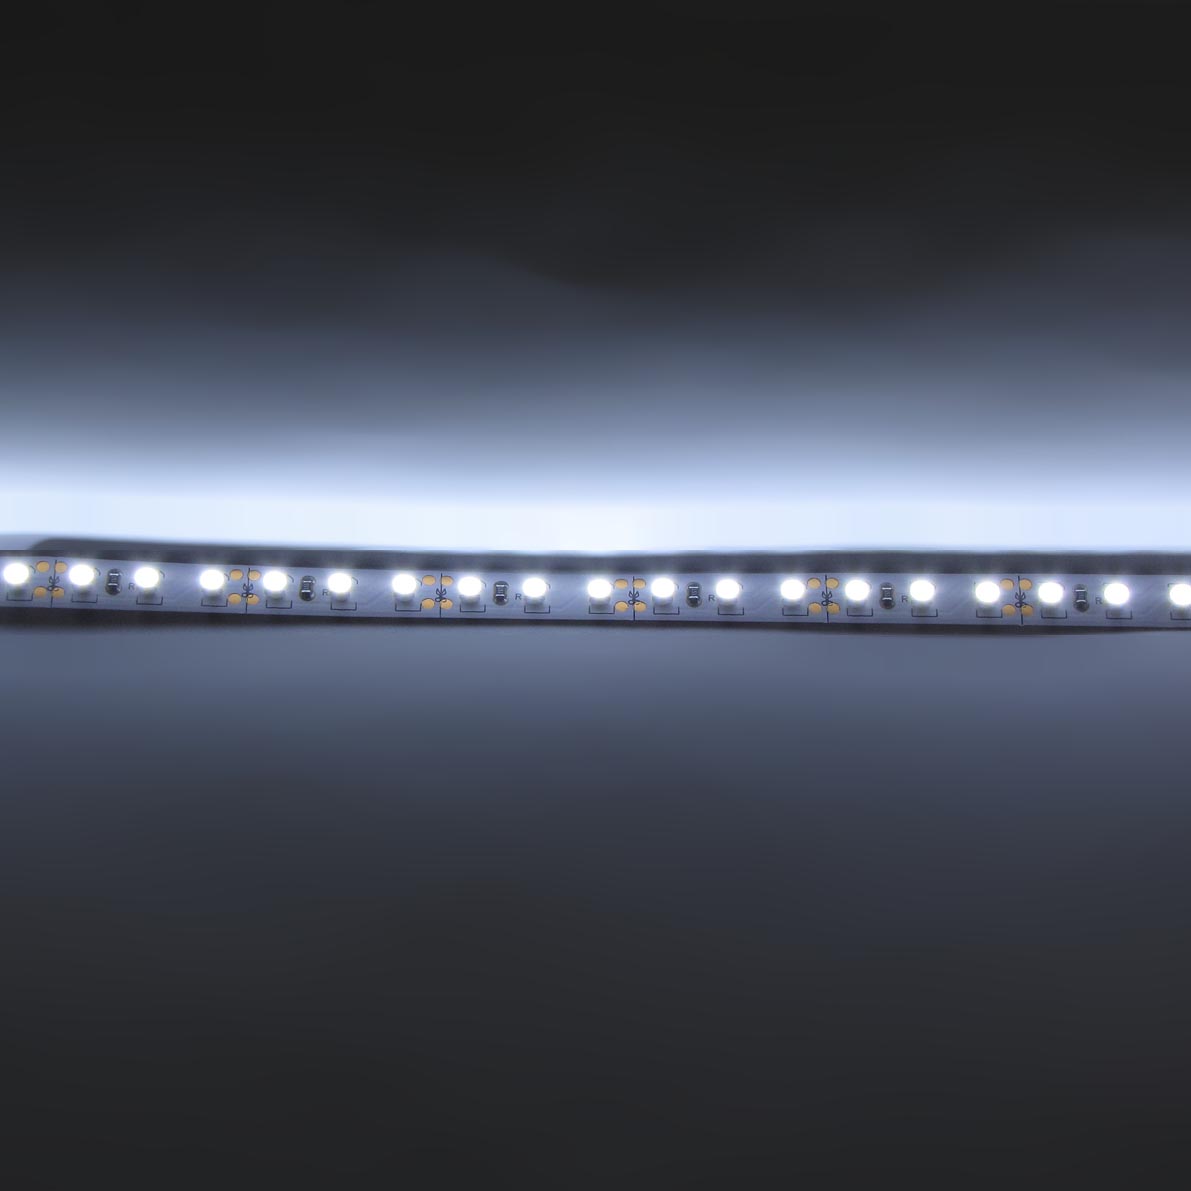 светодиодная лента standart class, 3528, 120led/m, white, 12v, ip33, g19, артикул 52685